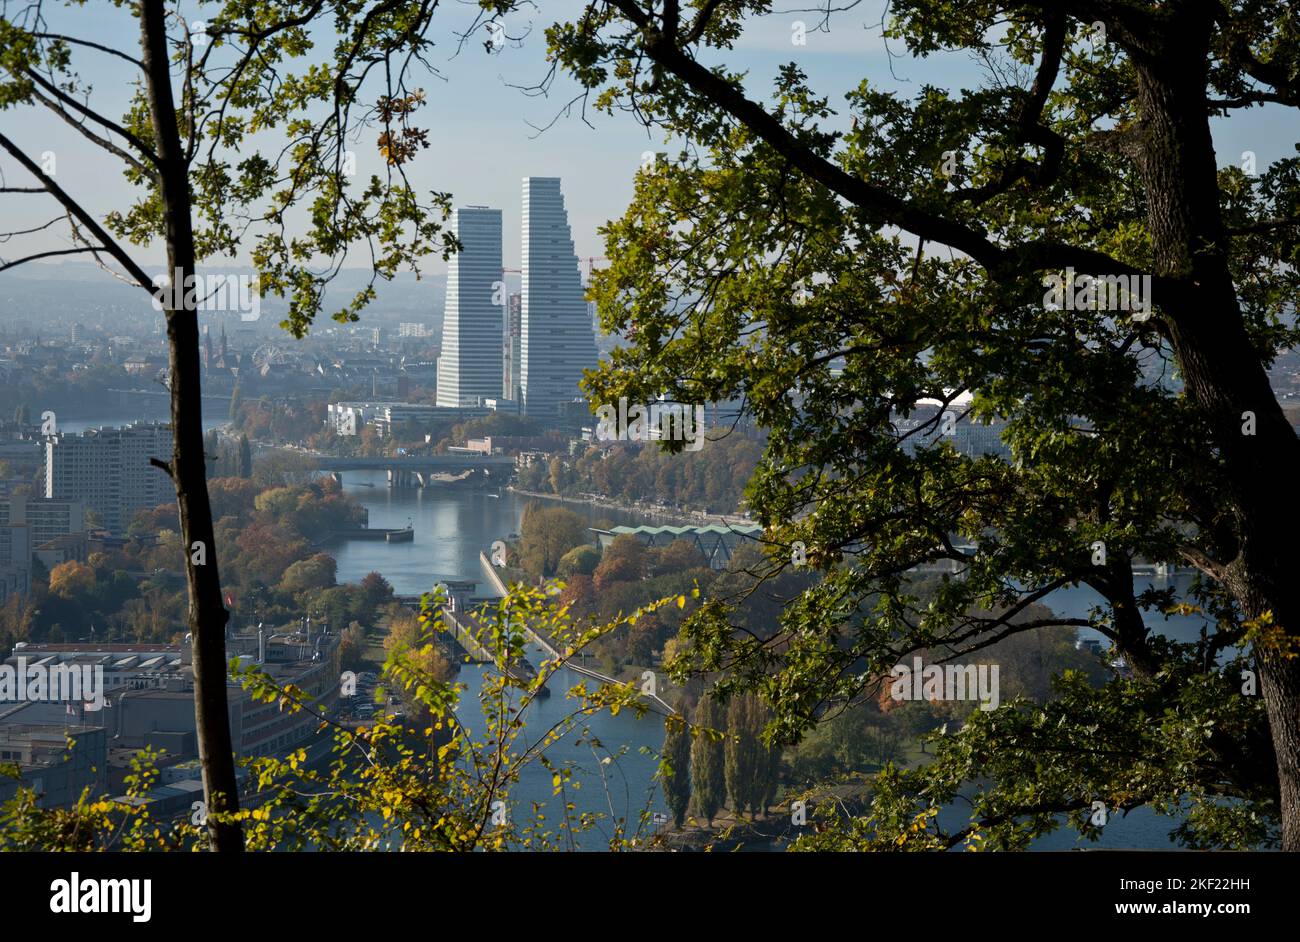 Eindrücklicher Blick vom deutschen Hornfelsen auf die Stadt Basel und die Roche-Türme Foto Stock